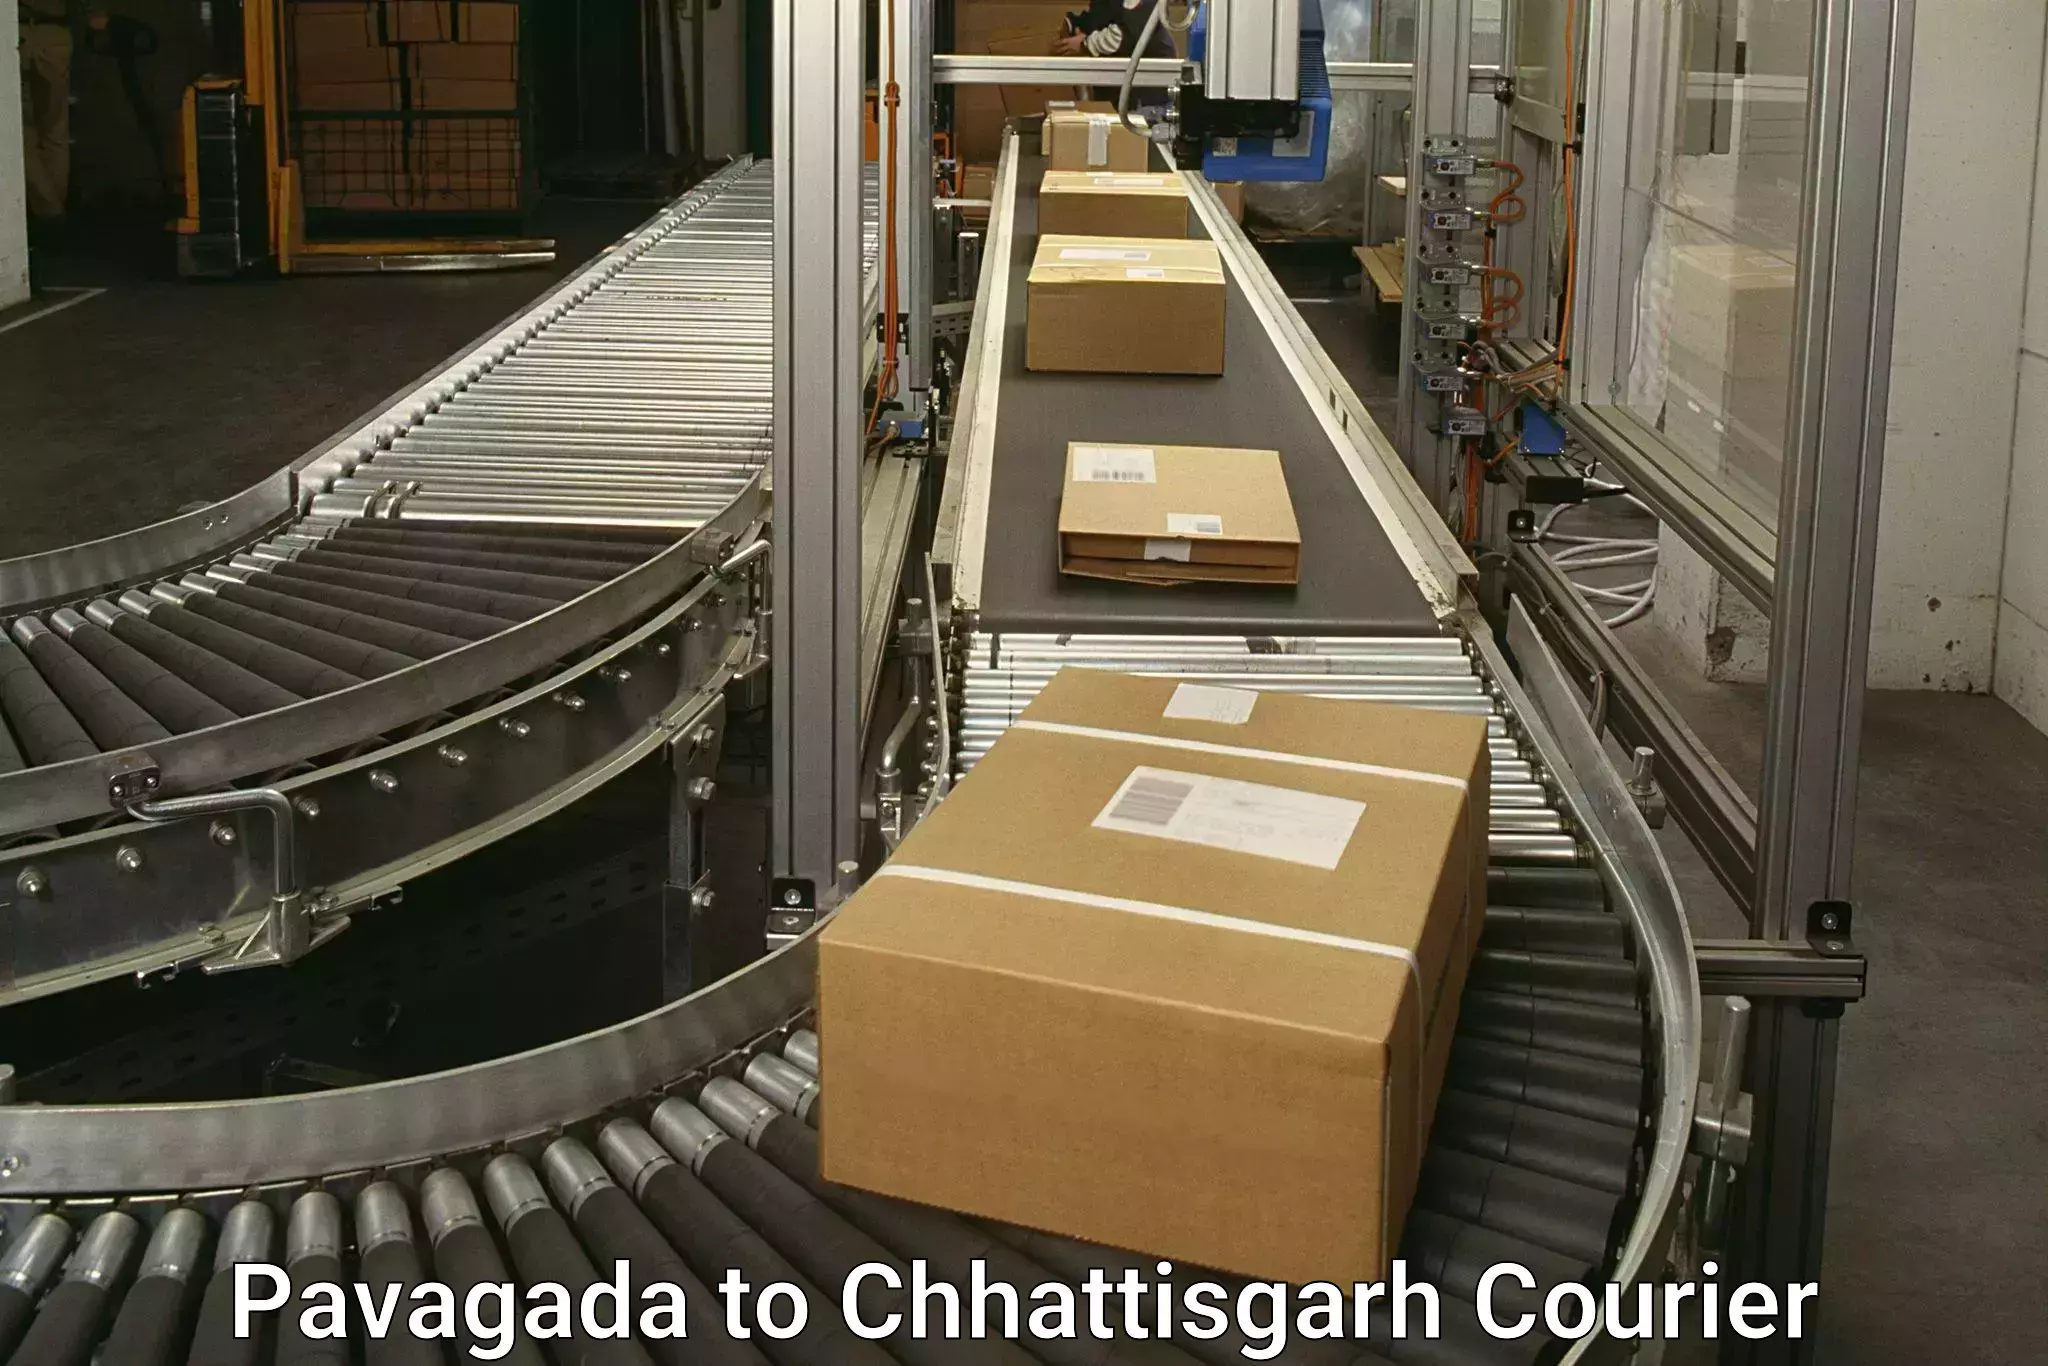 Courier service comparison Pavagada to Amakhokhara